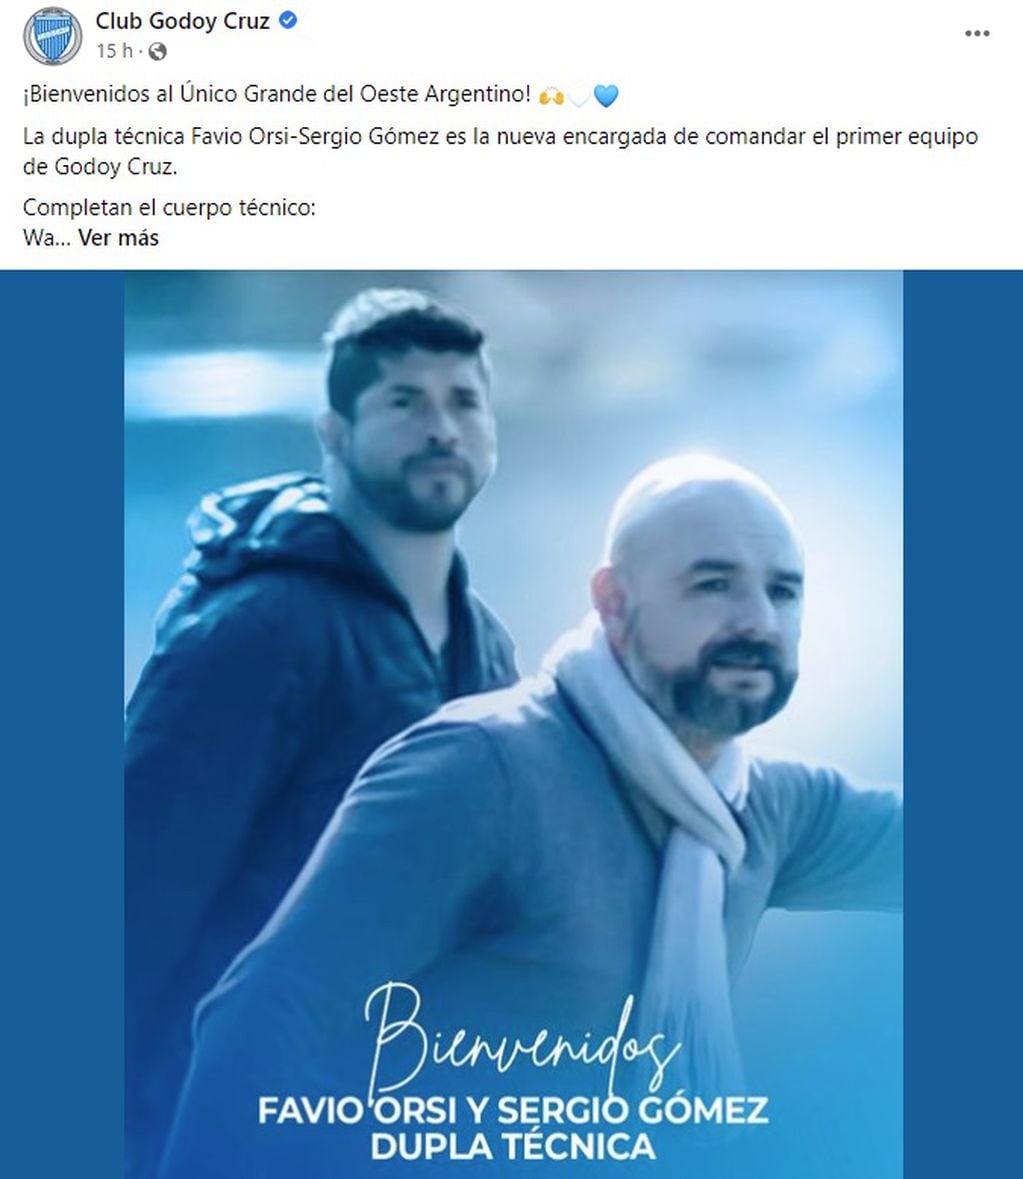 La dupla de técnicos, Favio Orsi y Sergio Gómez fueron anunciados por Godoy cruz en las redes sociales.